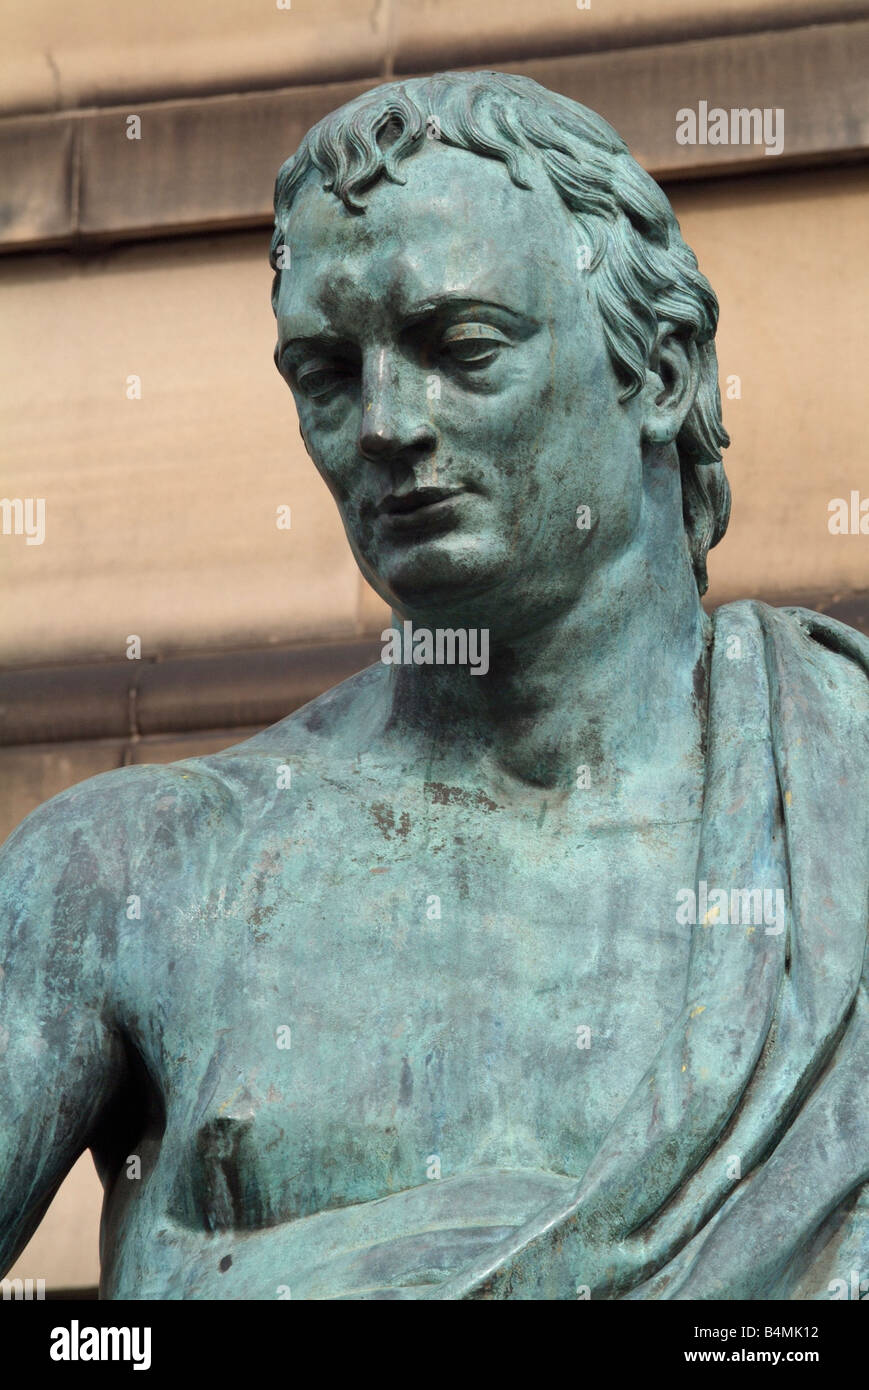 Statua in bronzo del filosofo David Hume sul Royal Mile di Edimburgo Foto Stock